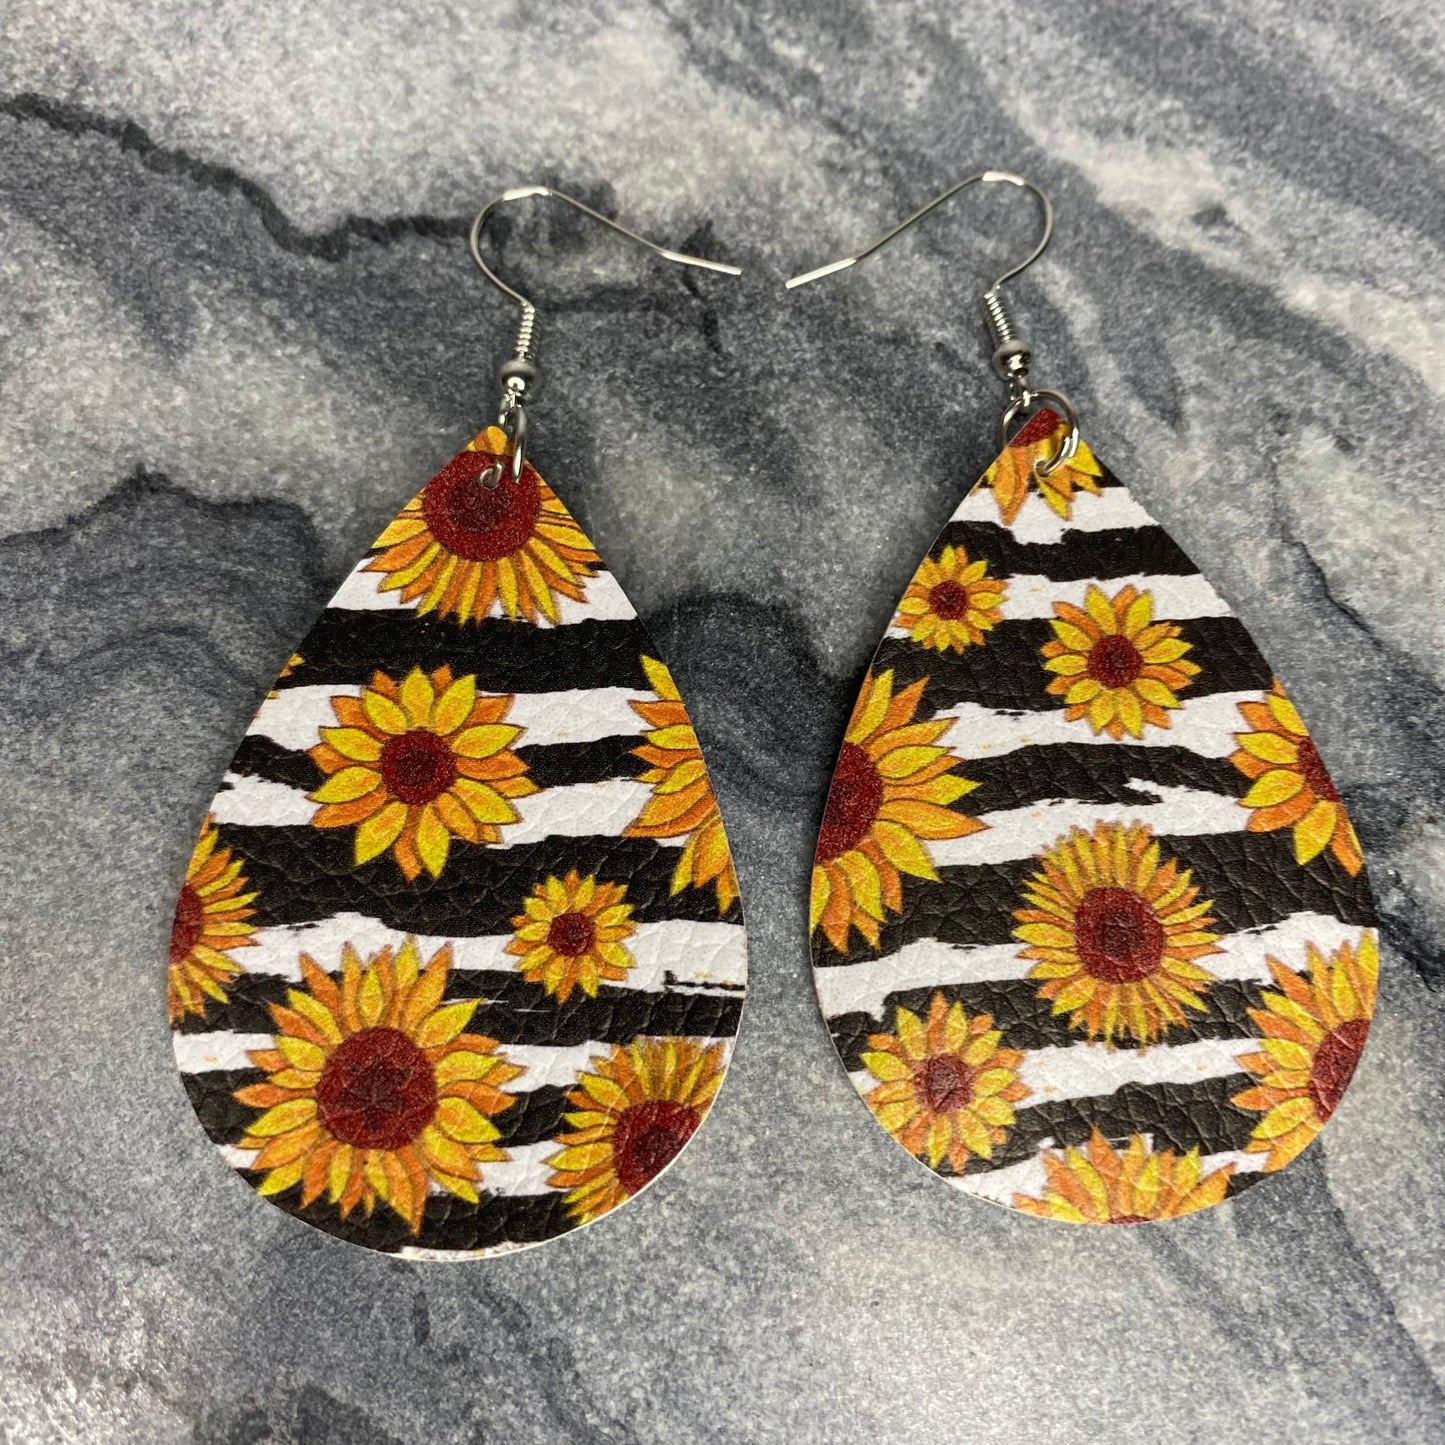 Faux Leather Earrings - Sunflower Zebra Print Teardrops